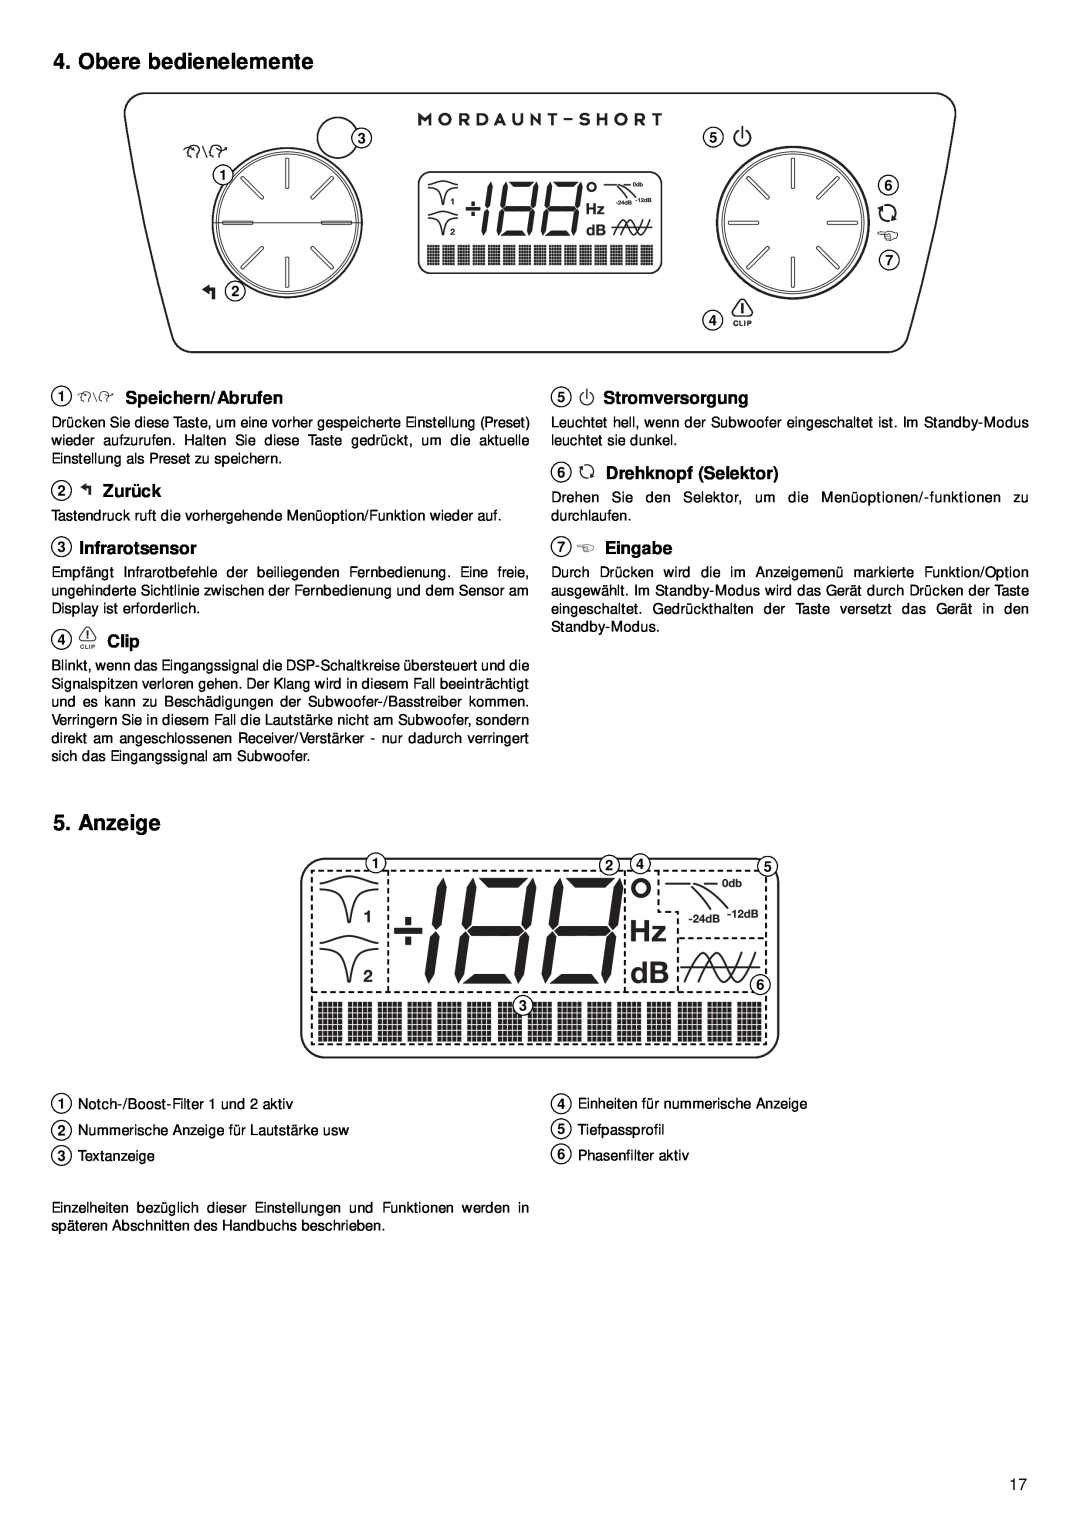 Mordaunt-Short 9 manual Obere bedienelemente, Anzeige, Speichern/Abrufen, 2 Zurück, 3Infrarotsensor, 4Clip, Stromversorgung 